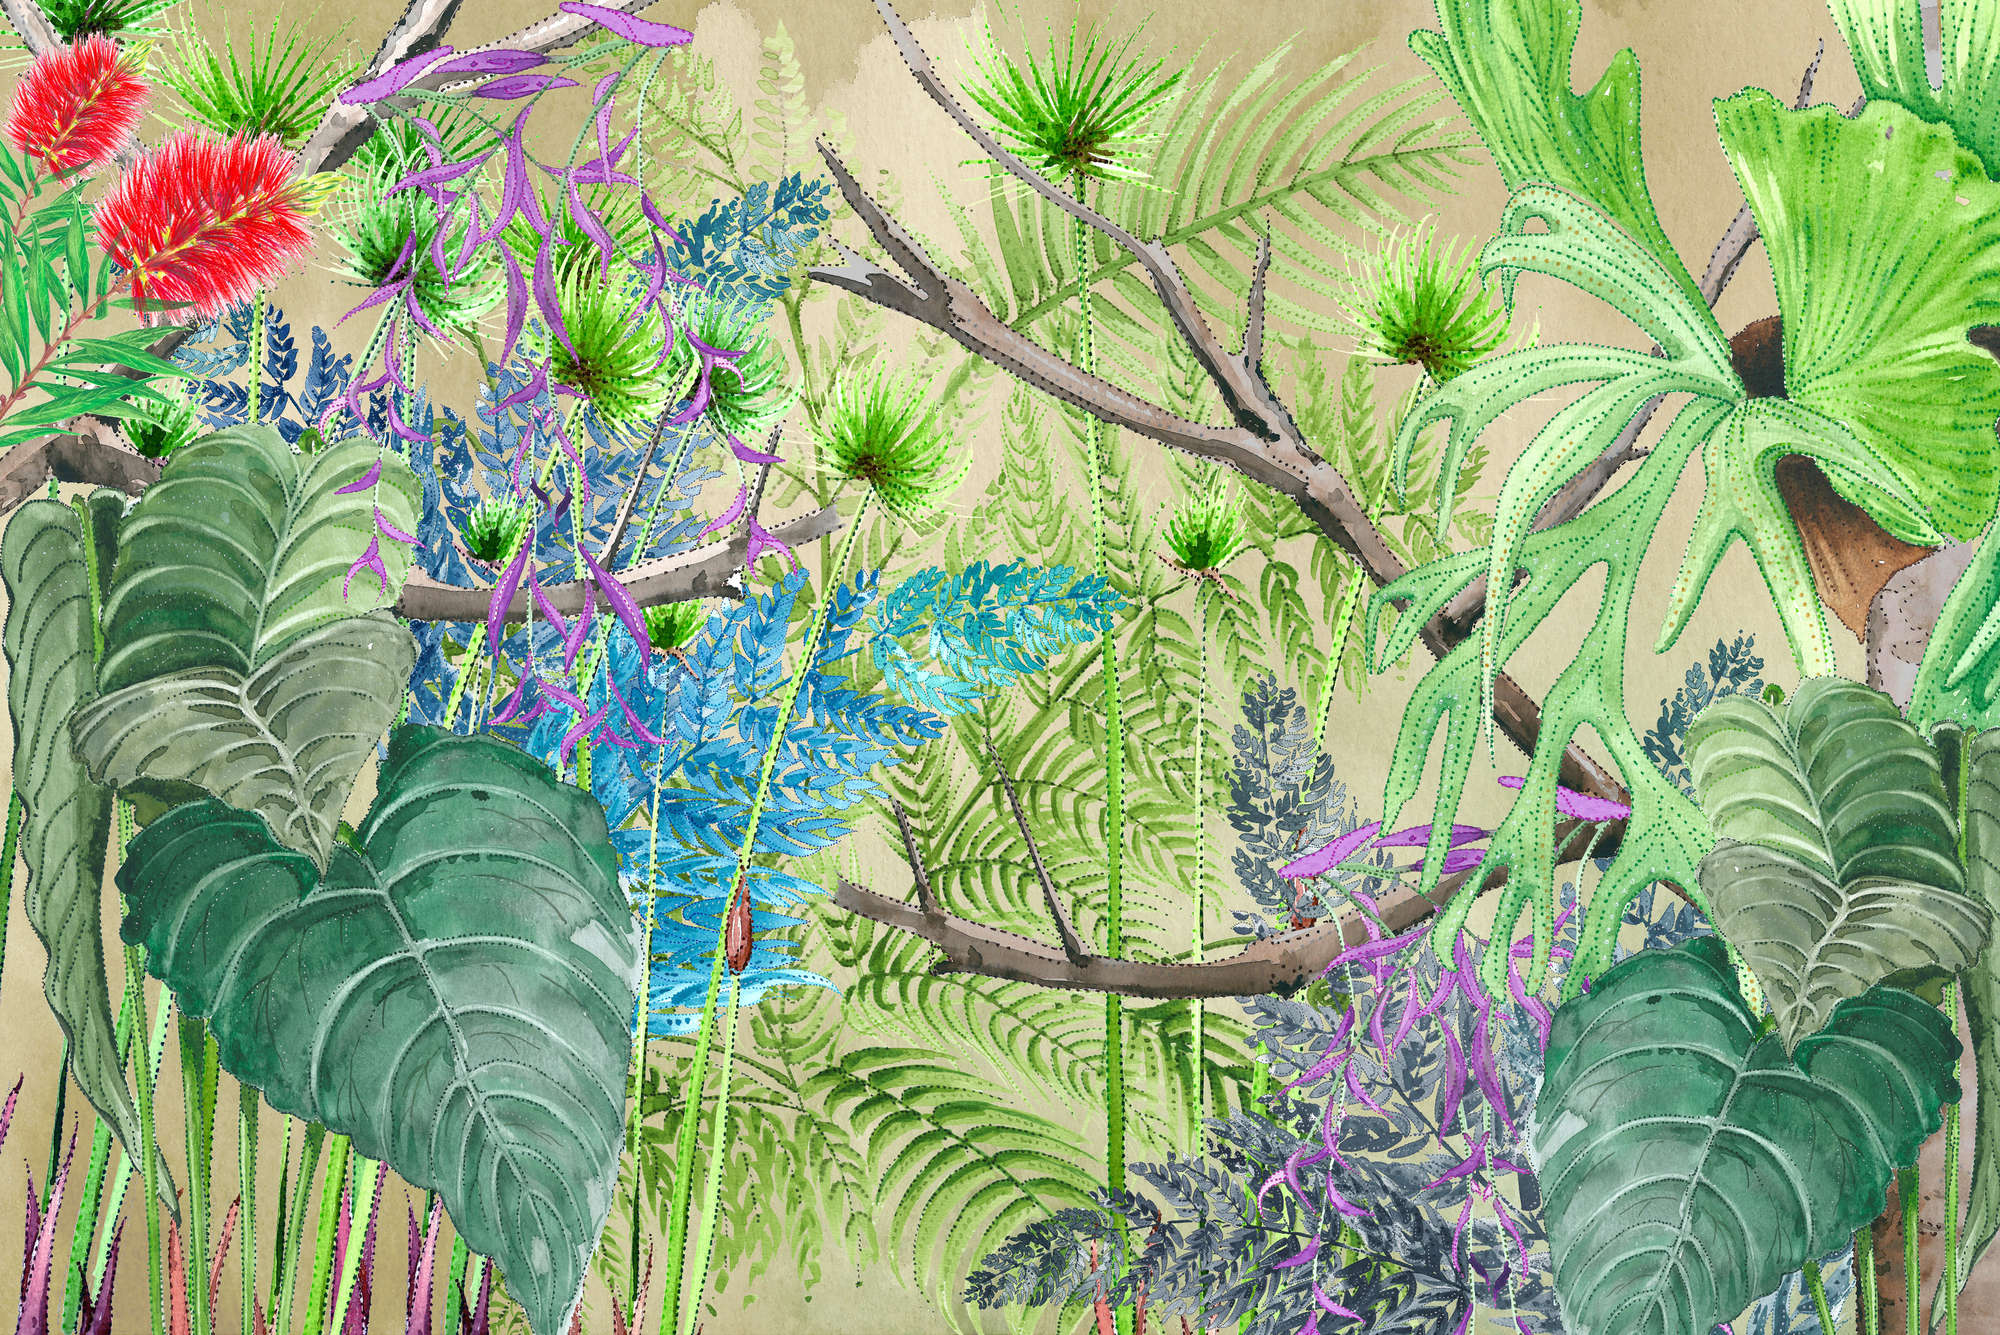             Mural de la selva con flores en azul y verde sobre vinilo texturizado
        